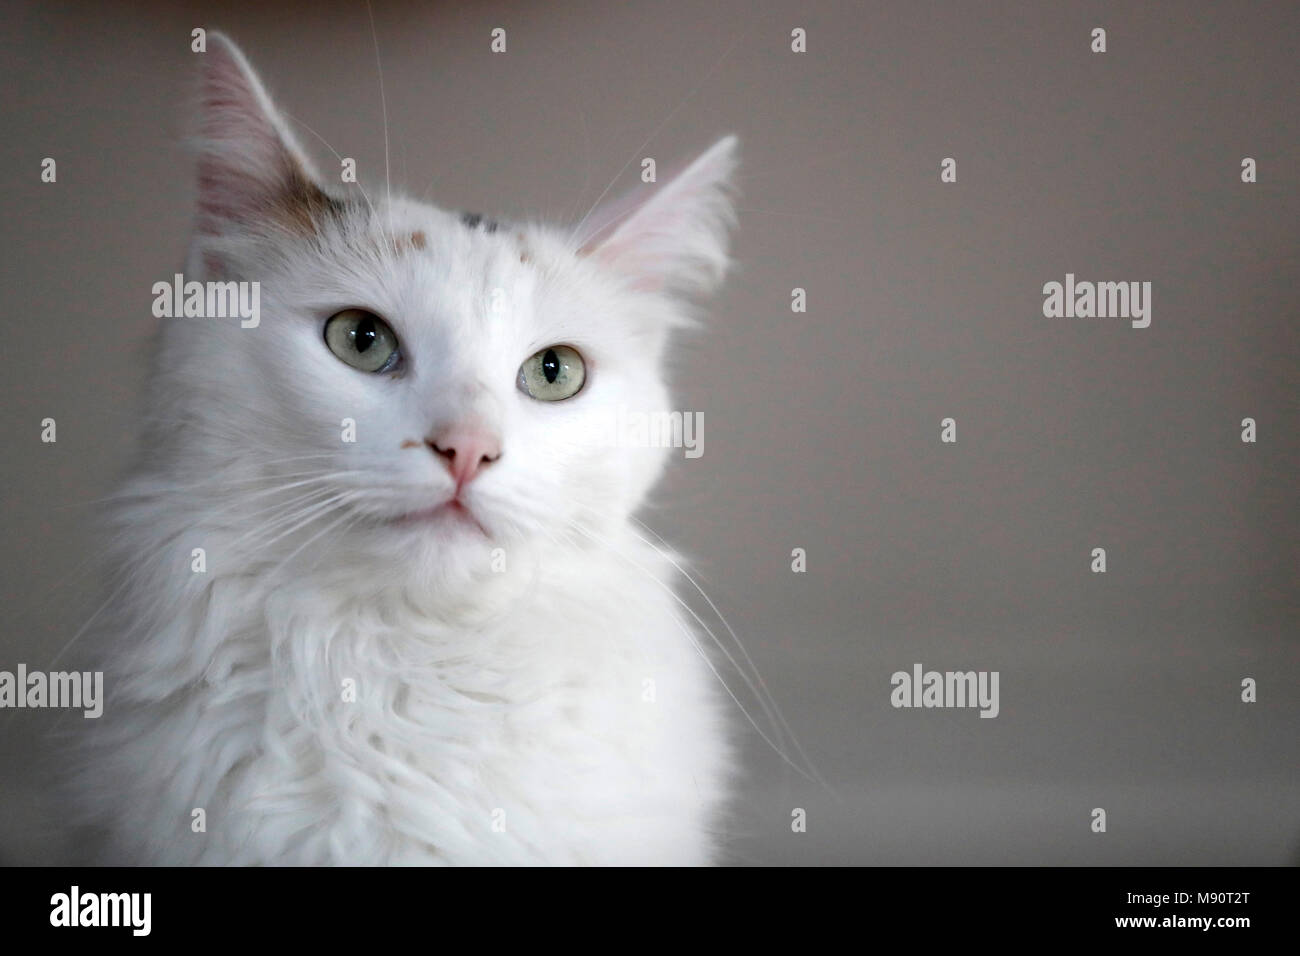 White cat. Stock Photo